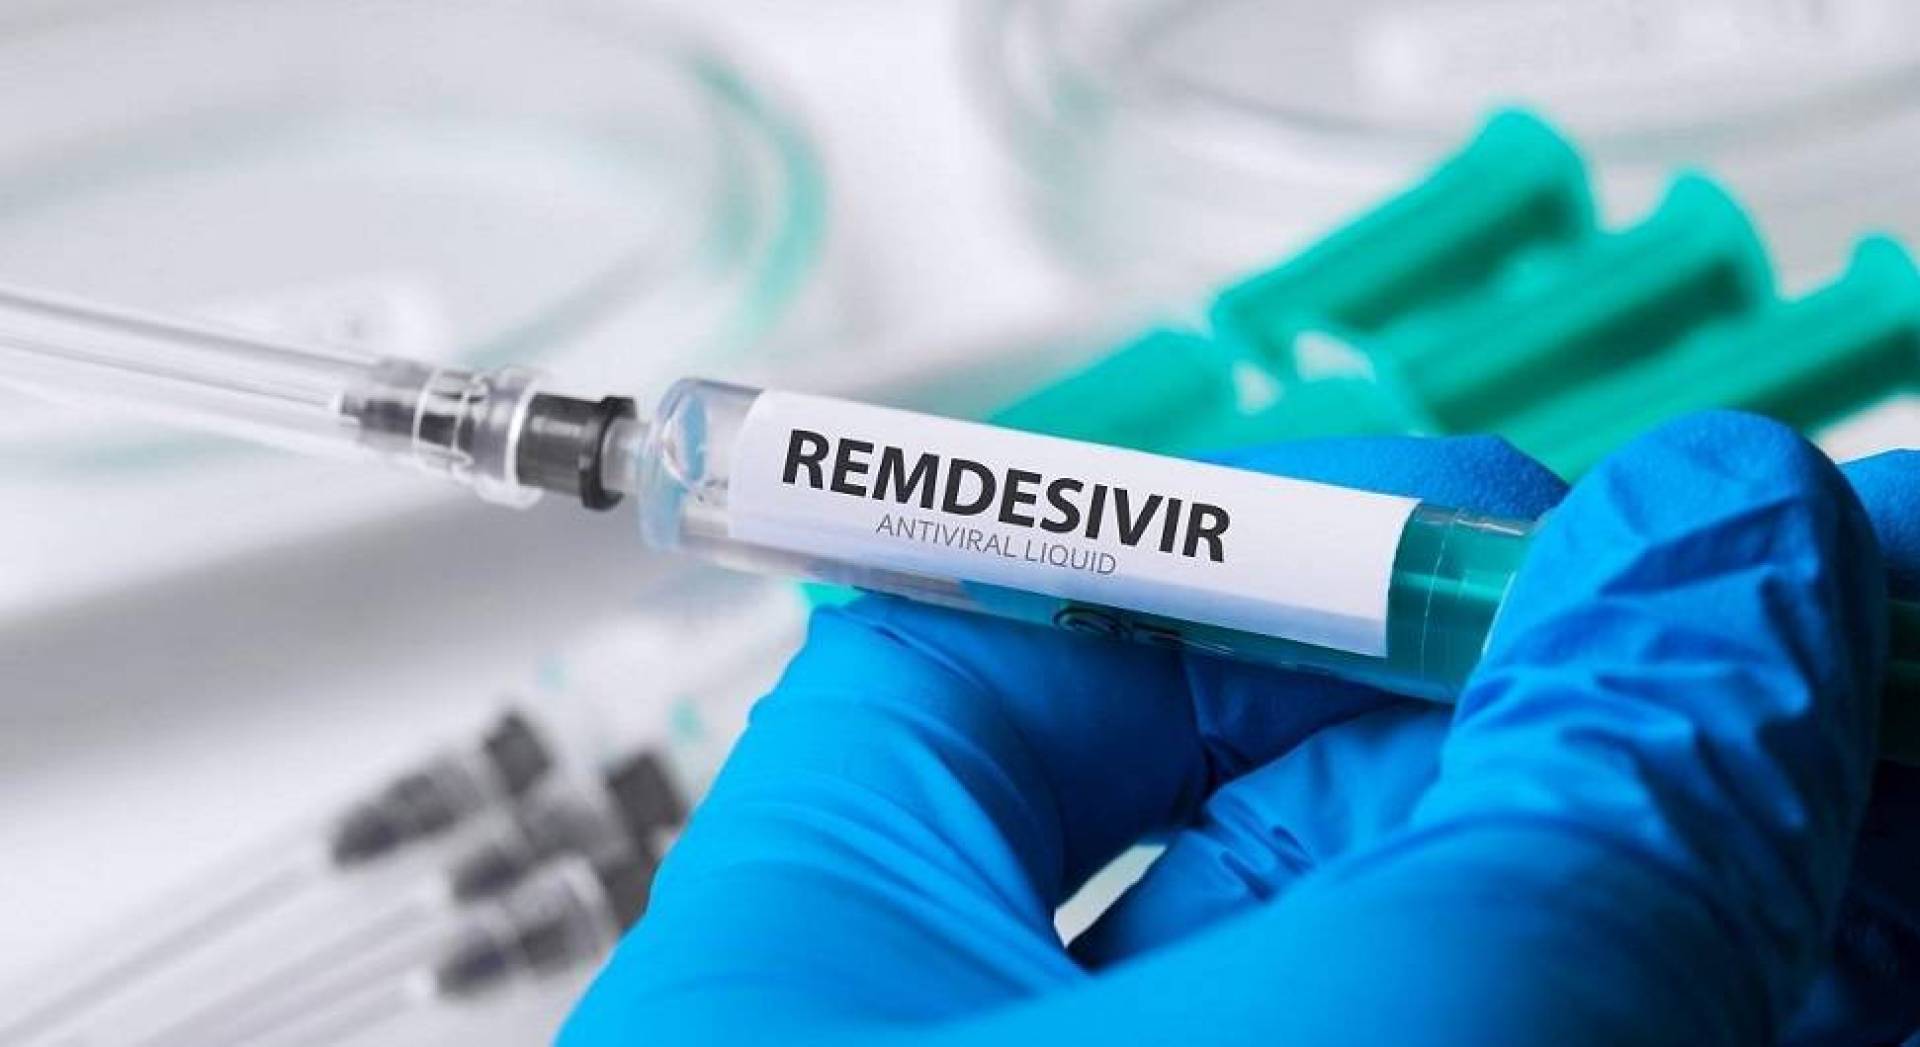 الاتحاد الأوروبي يشتري 30 ألف جرعة من ريمديسيفير لعلاج حالات كورونا الخطرة